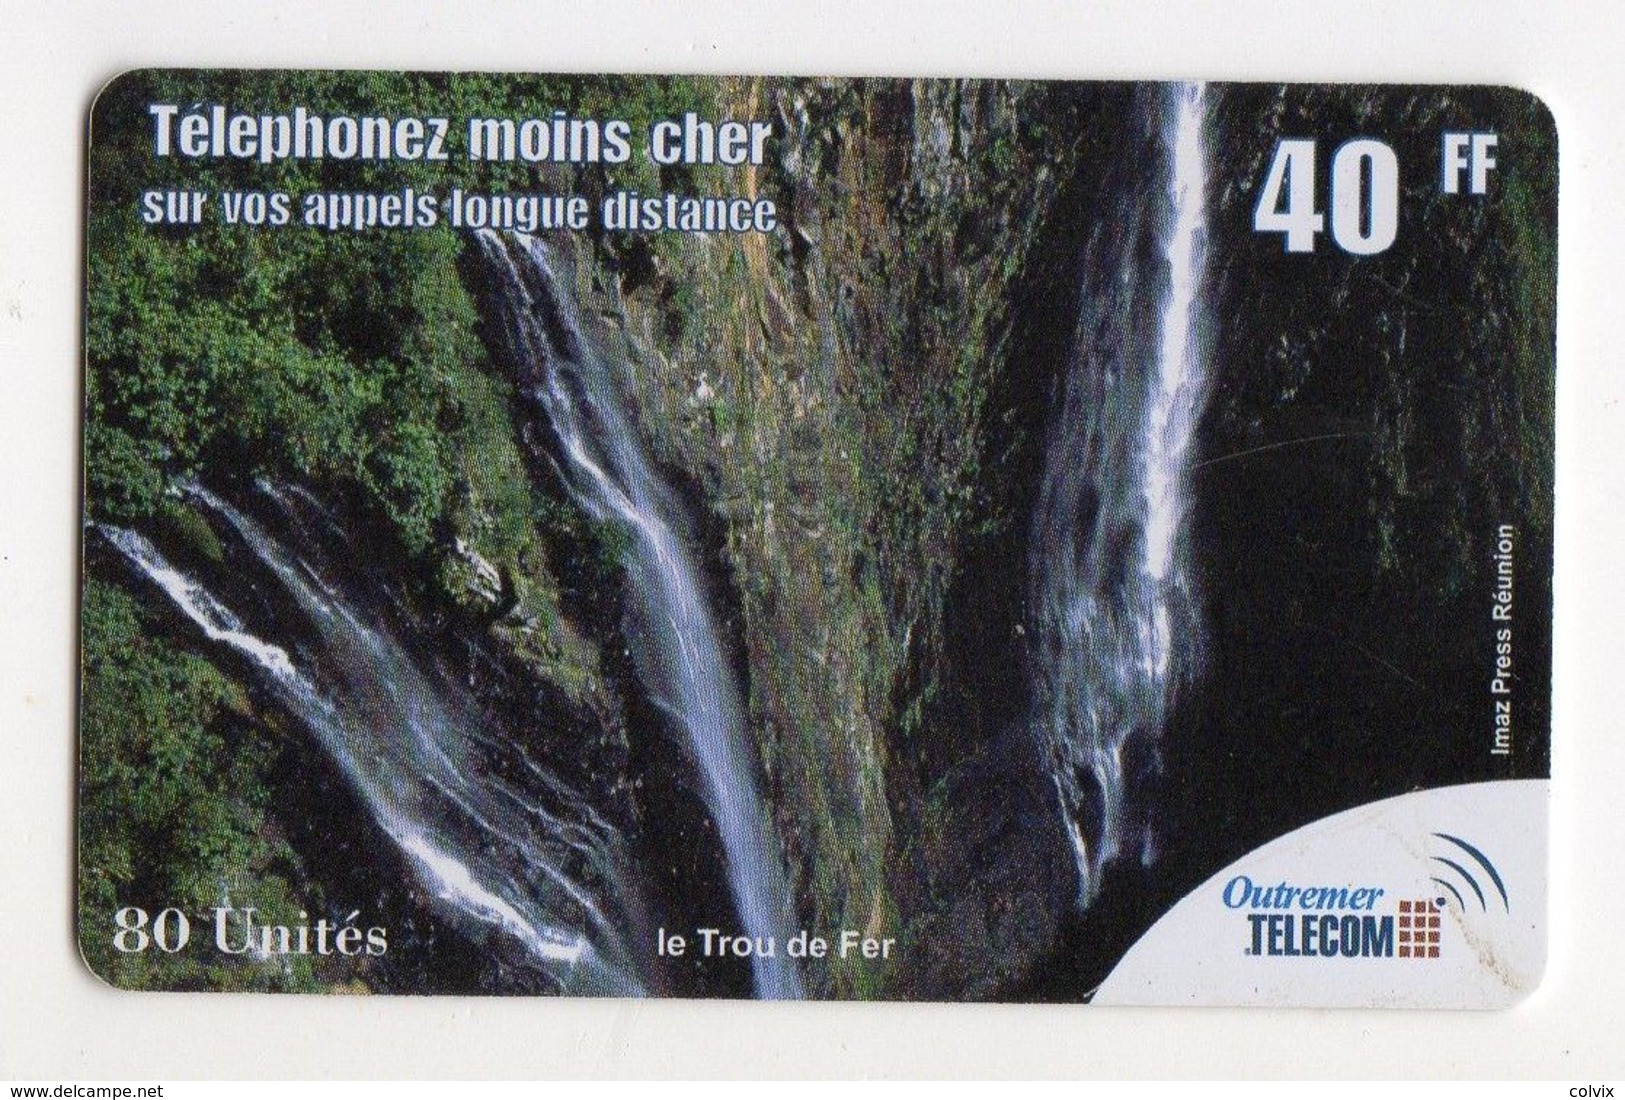 ANTILLES FRANCAISE PREPAYEE OUTREMER TELECOM LE TROU DE FER 40FF - Antilles (Françaises)